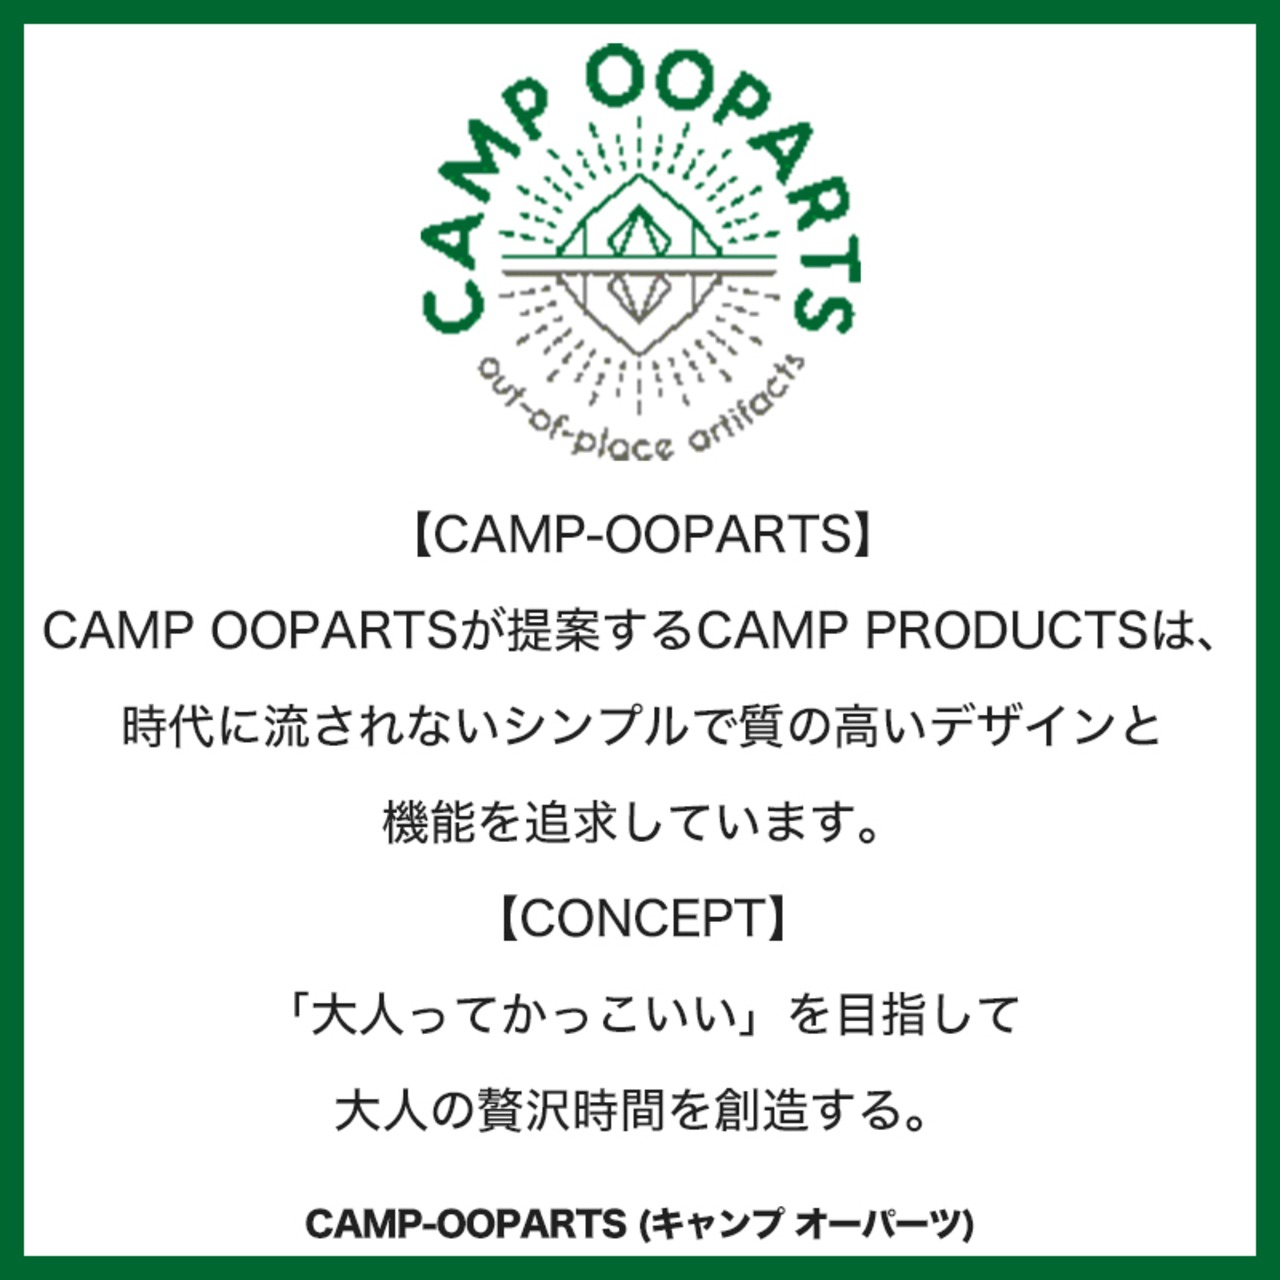 CAMPOOPARTS キャンプオーパーツ palette パレット ジャグスタンド 「オイル仕上げ」 plywood 「組立式」 アウトドア キャンプ  BBQ